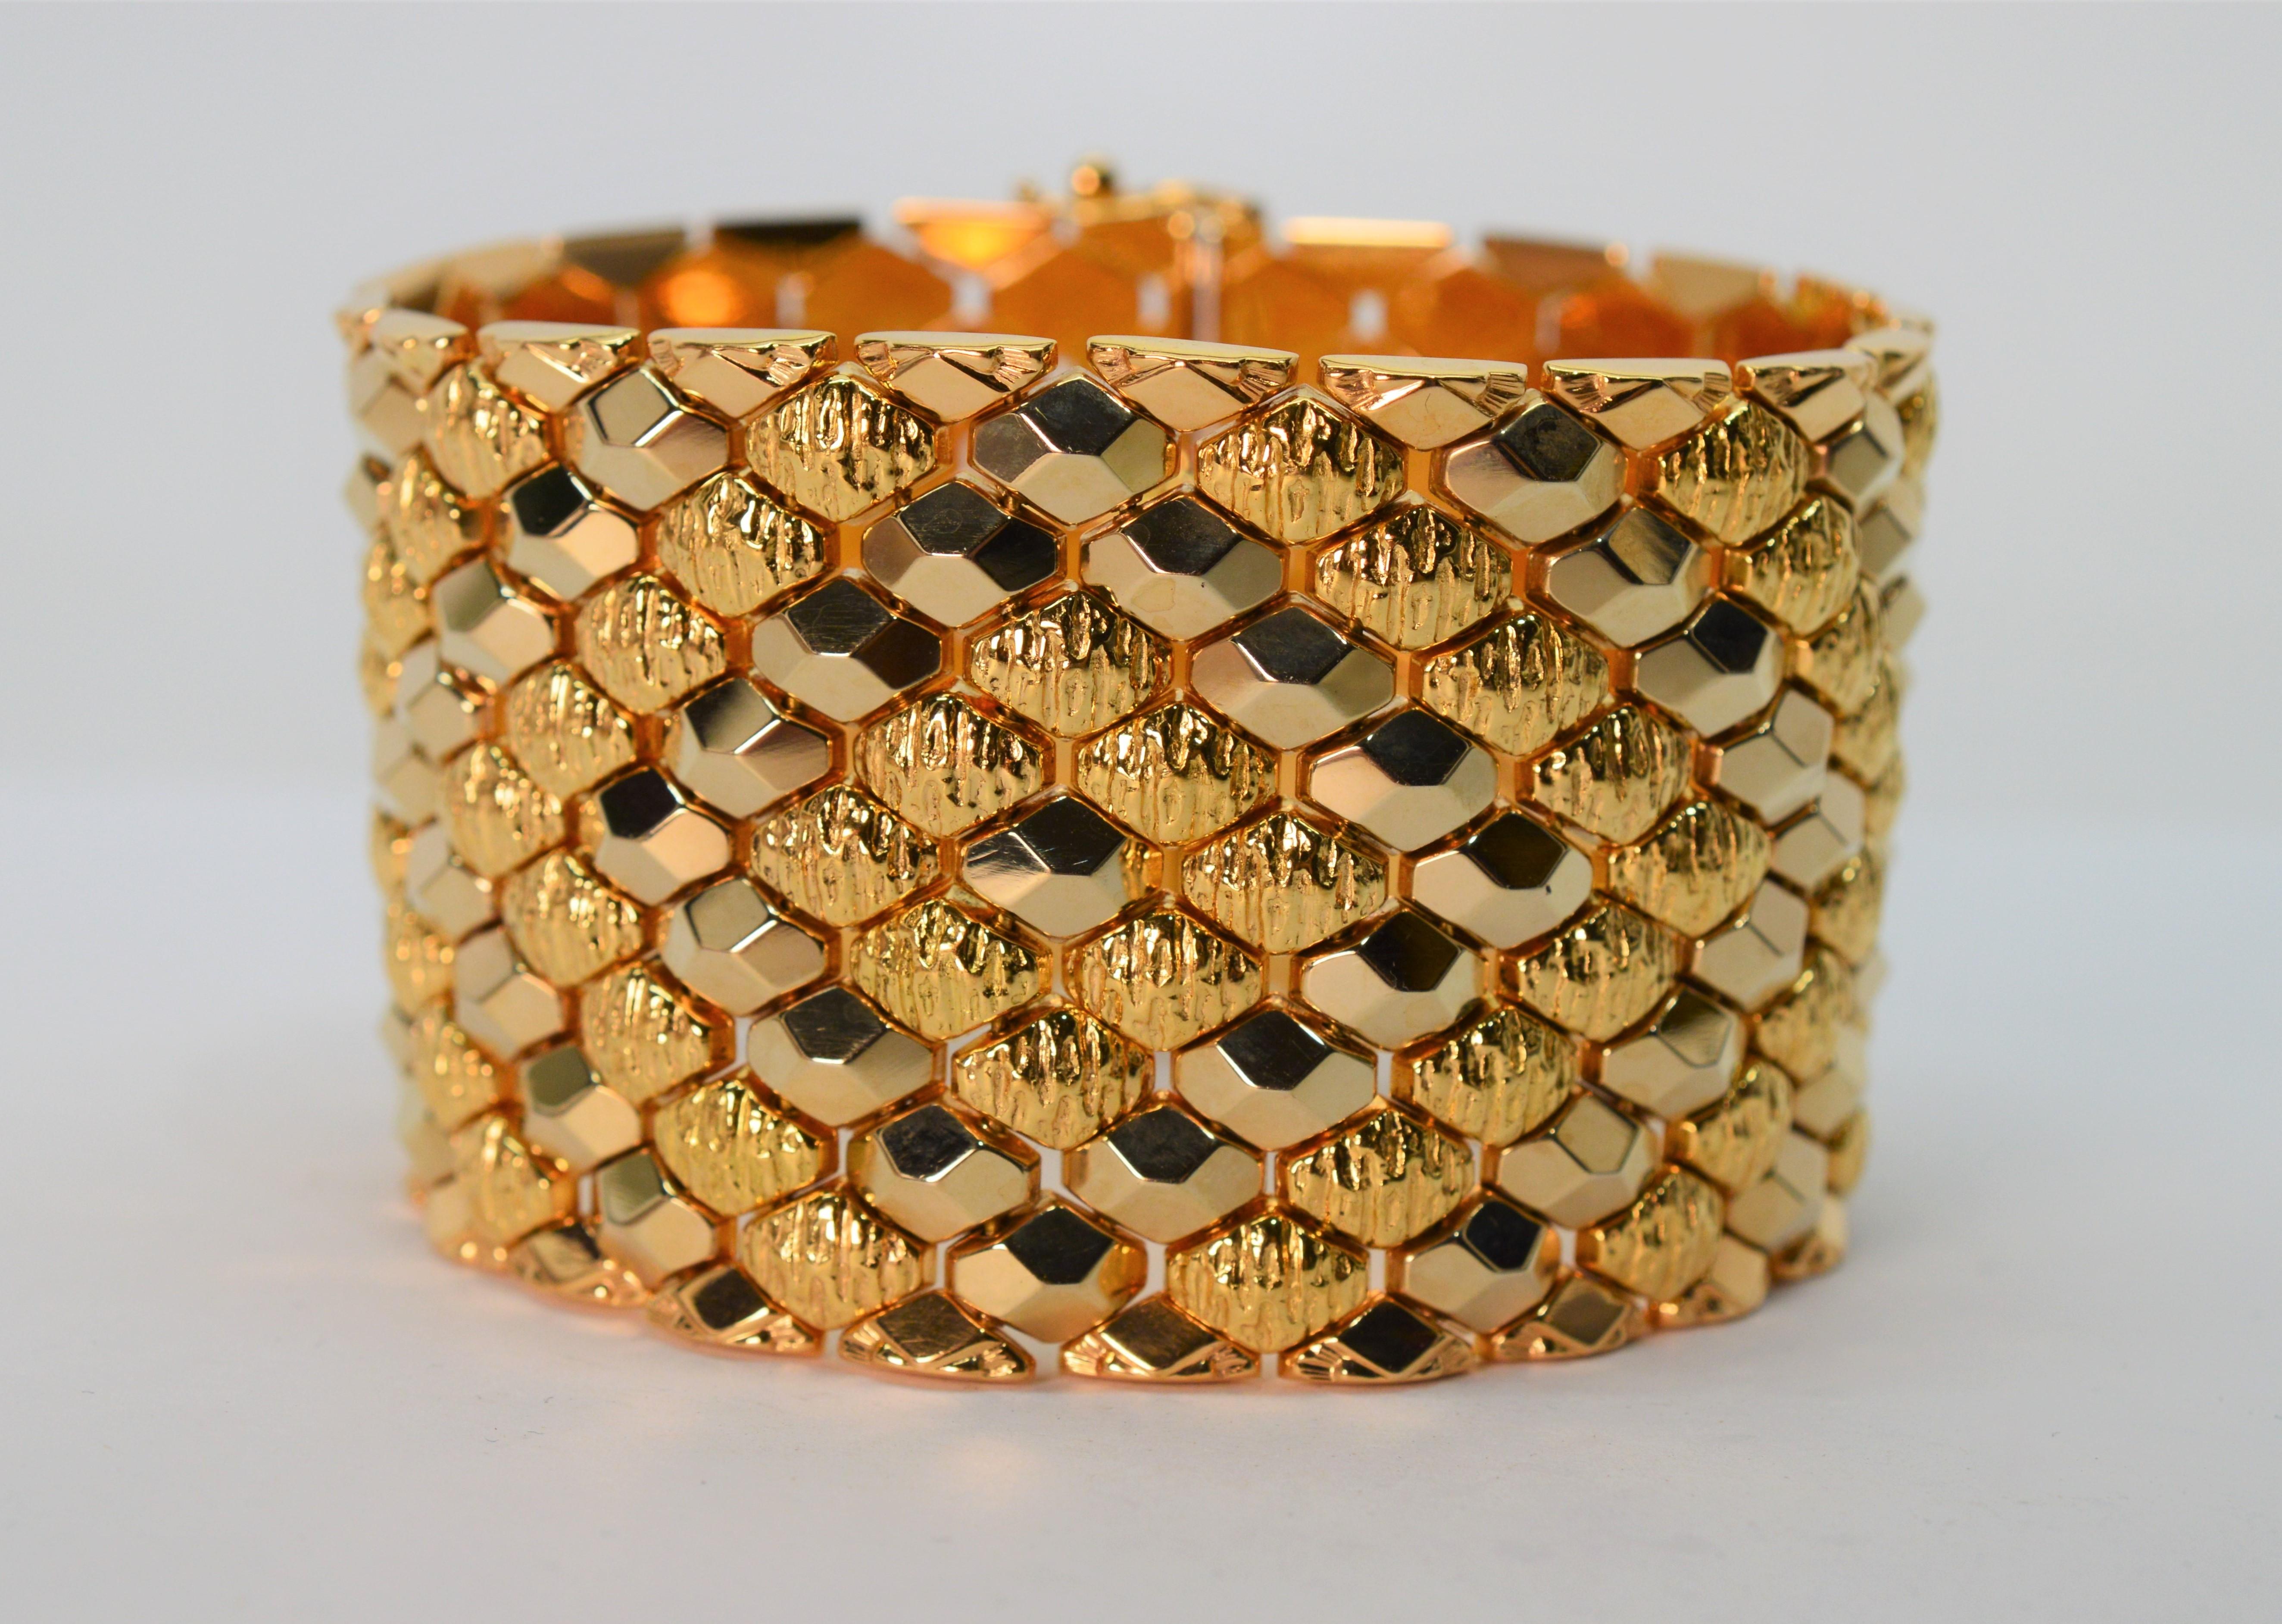 Audacieusement doré, ce bracelet finement fabriqué en Italie est superbe en riche or jaune 18 carats. Des maillons marquises frappants dans des finitions complémentaires brillantes et texturées enveloppent audacieusement le poignet de ce généreux